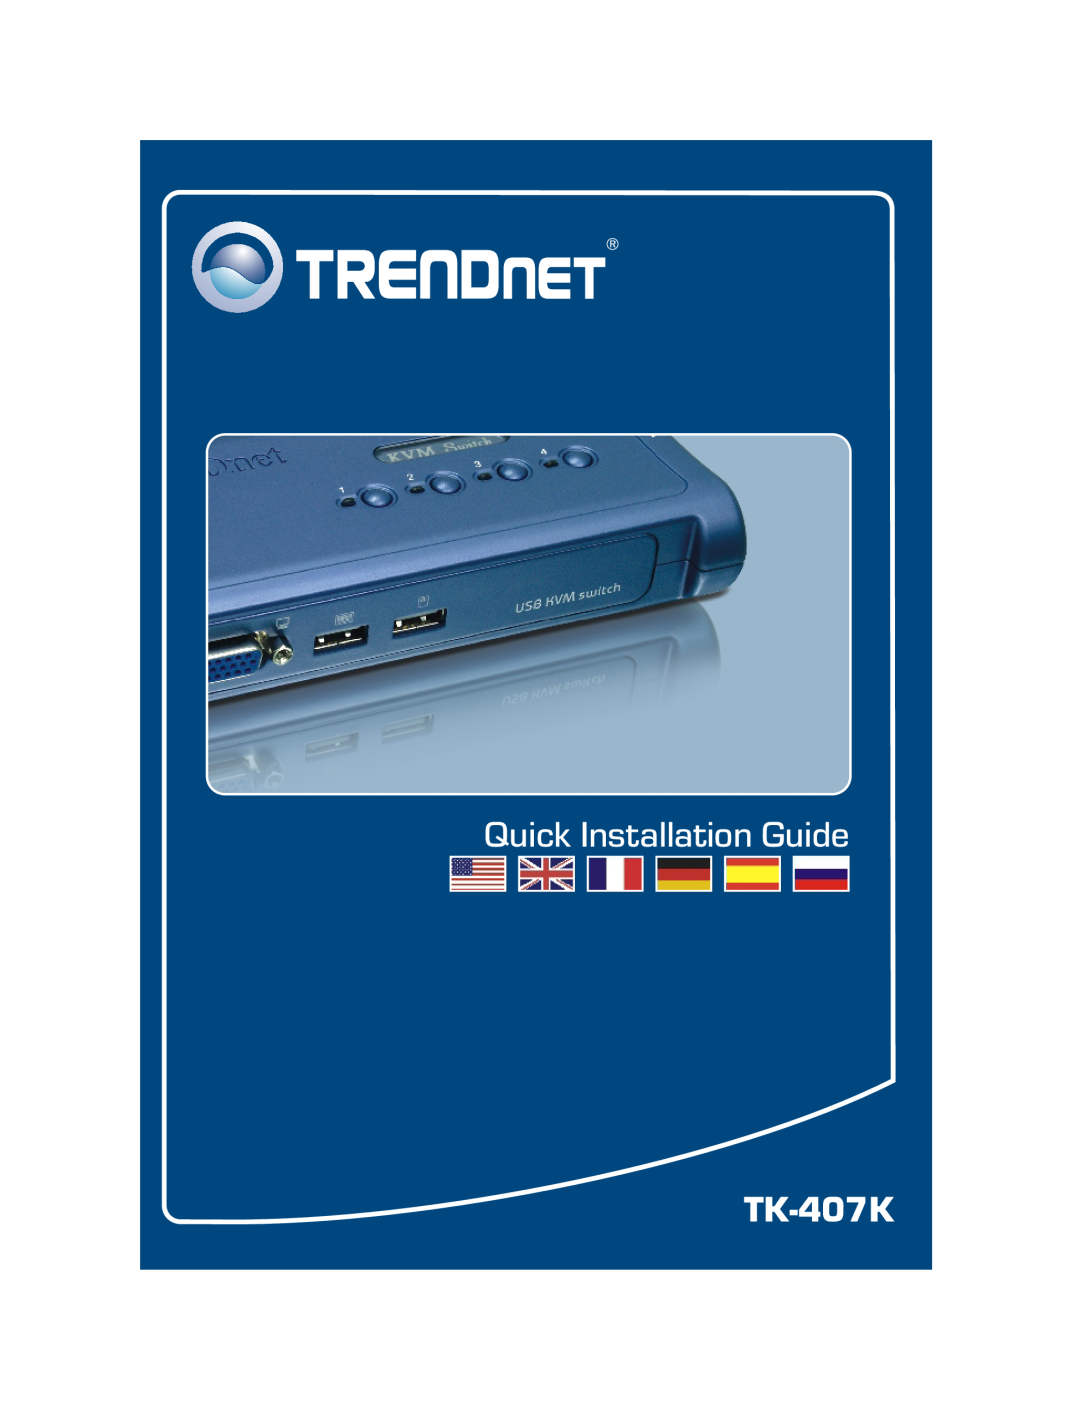 TRENDnet TK-407K manual Quick Installation Guide 